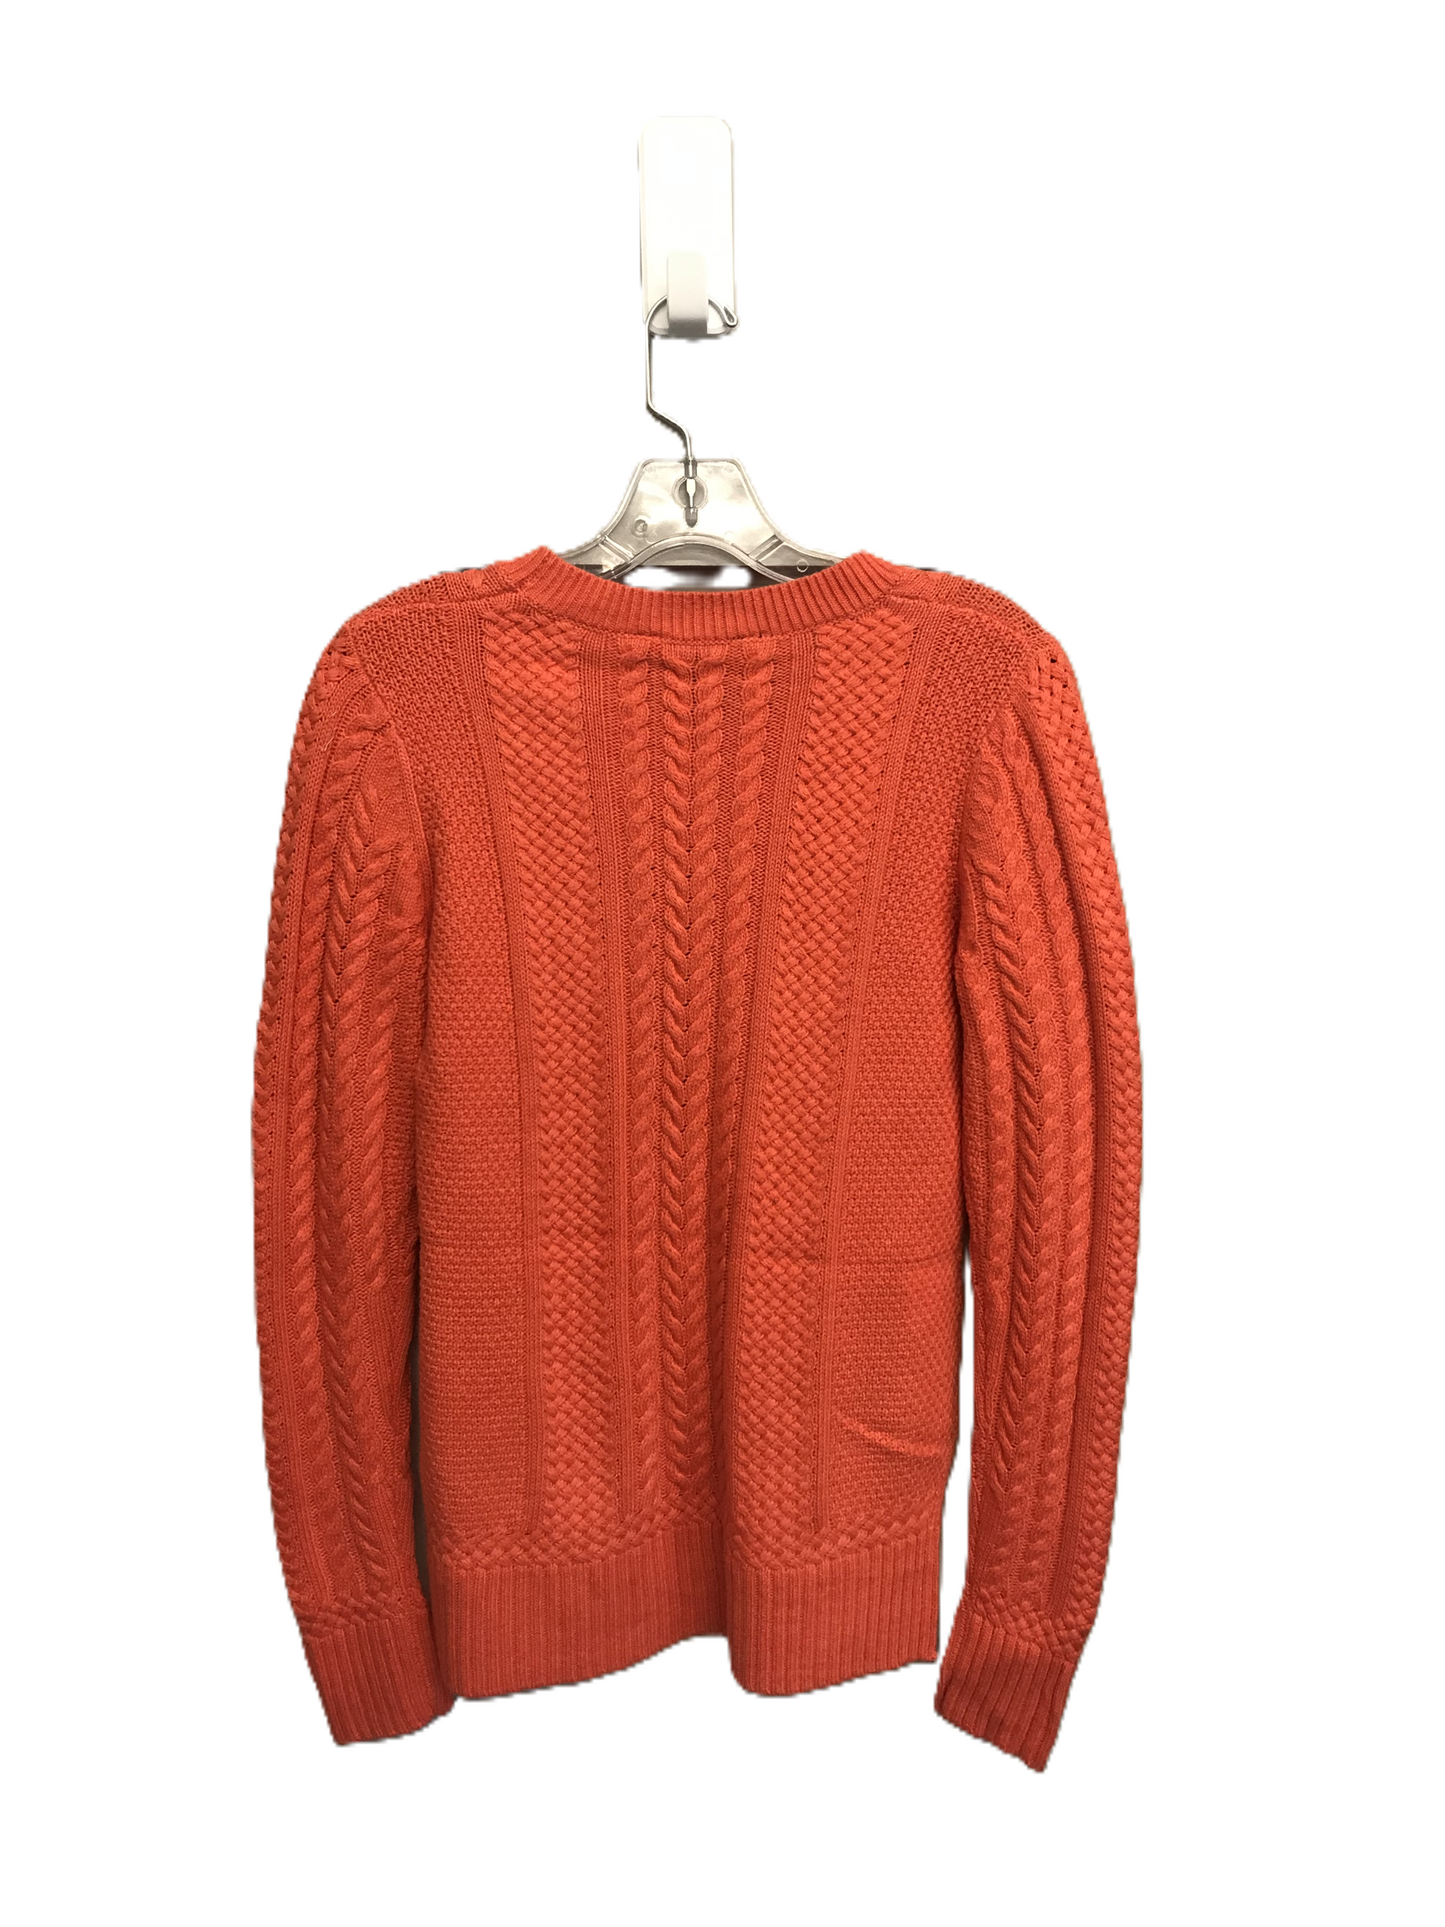 Orange Sweater By Bcbgmaxazria, Size: S